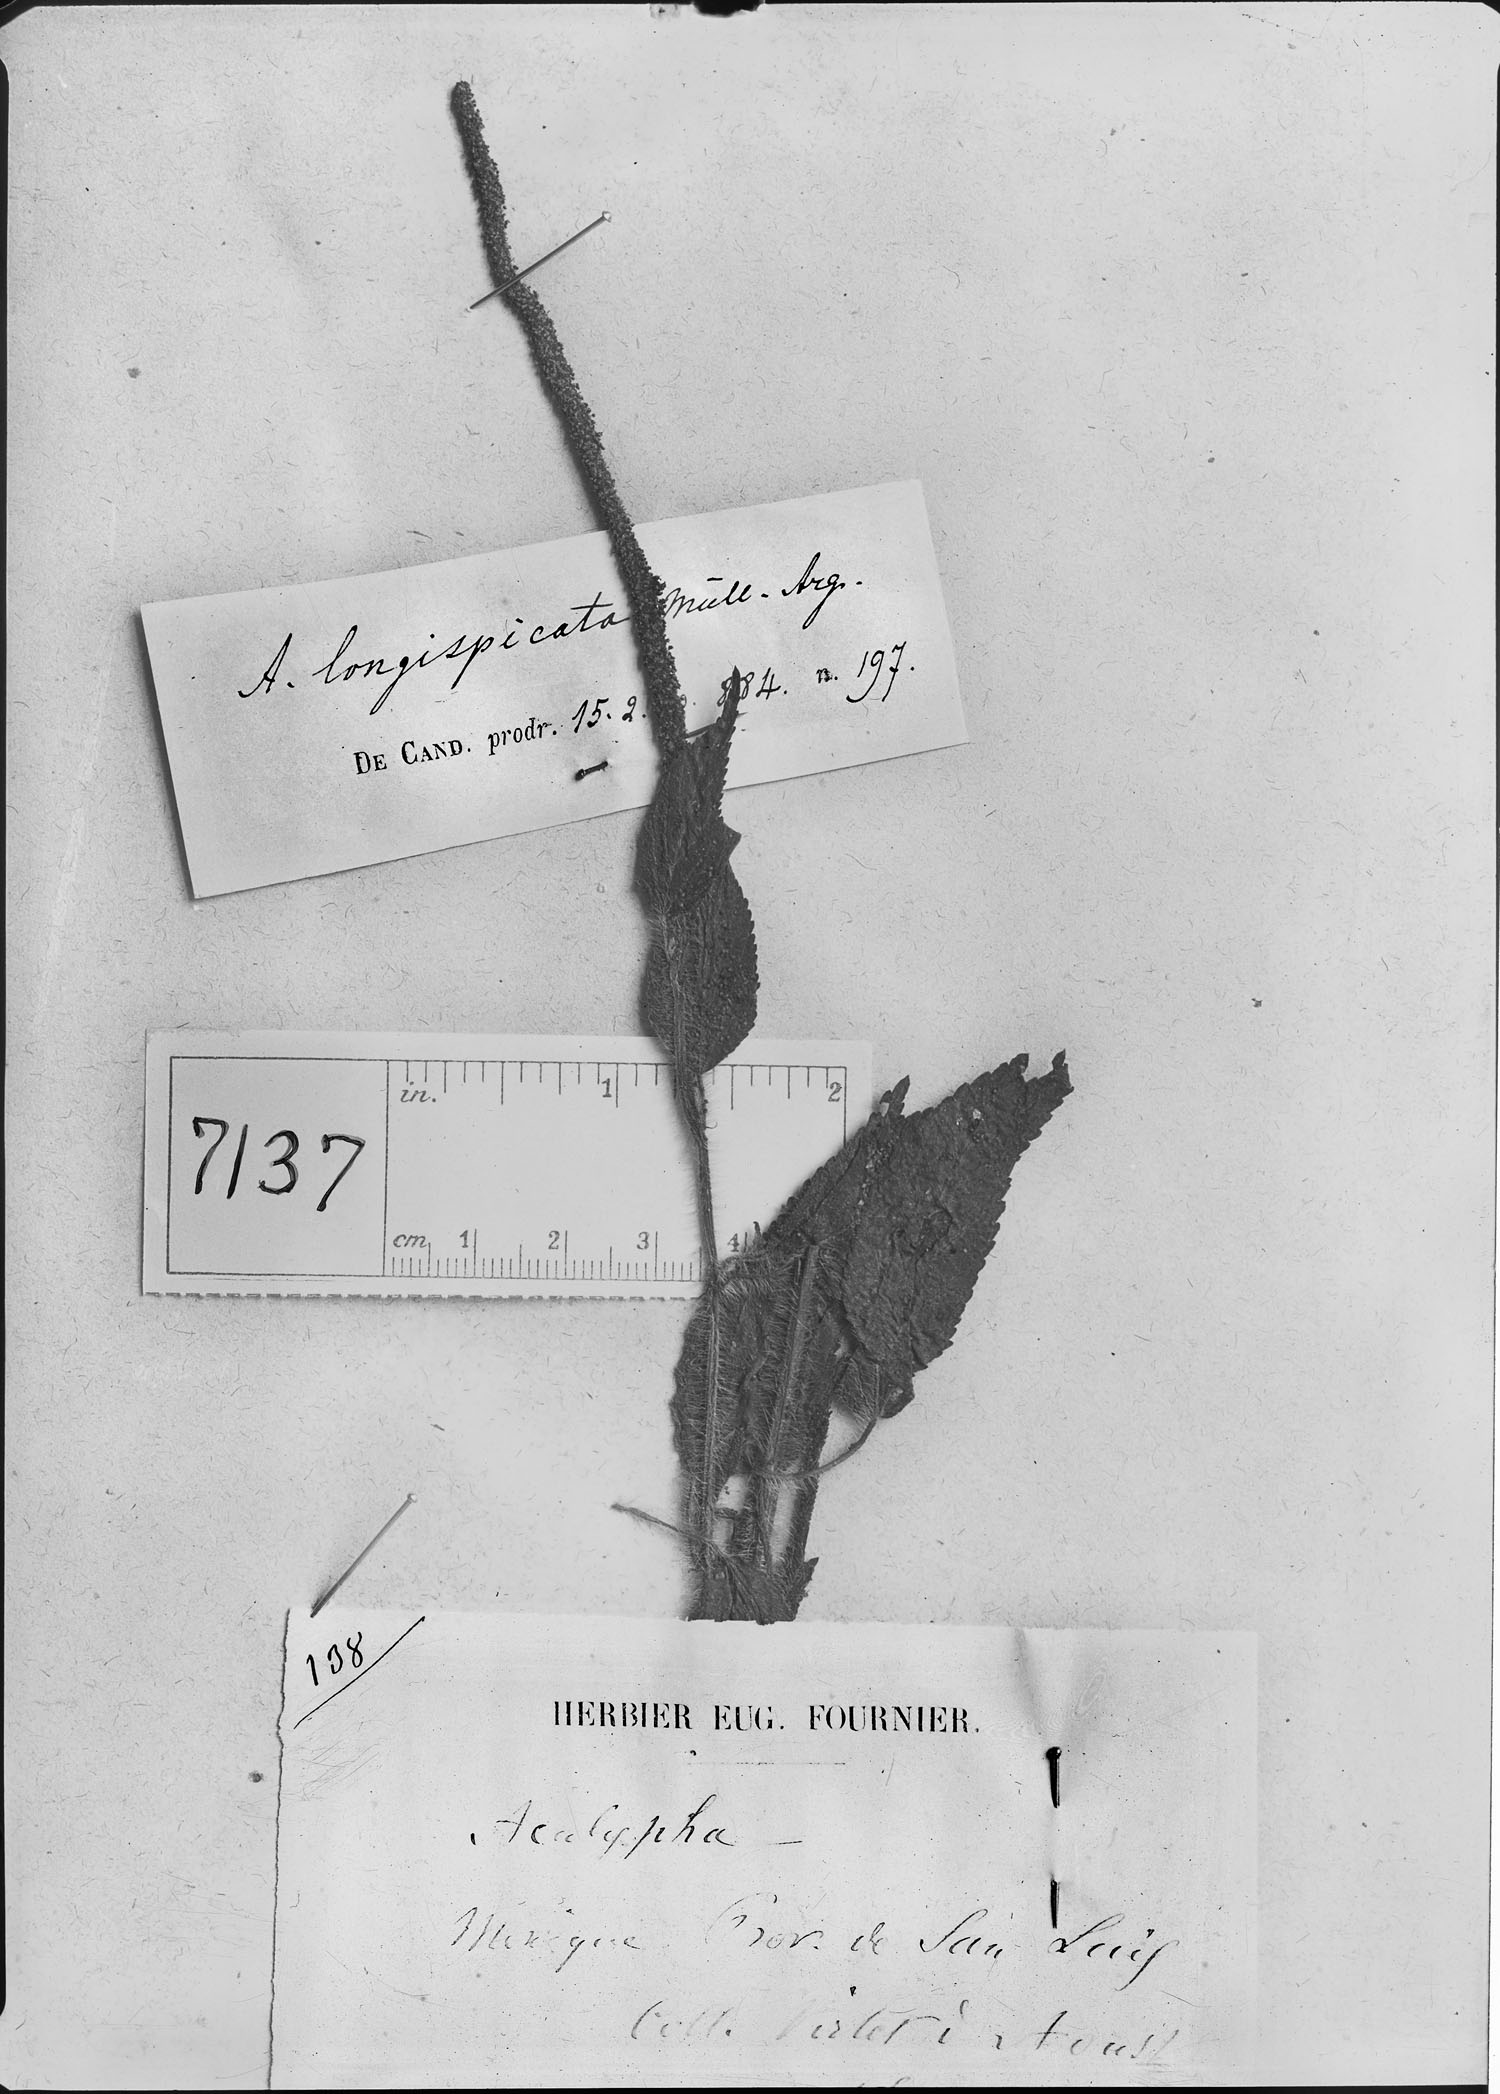 Acalypha longispicata image